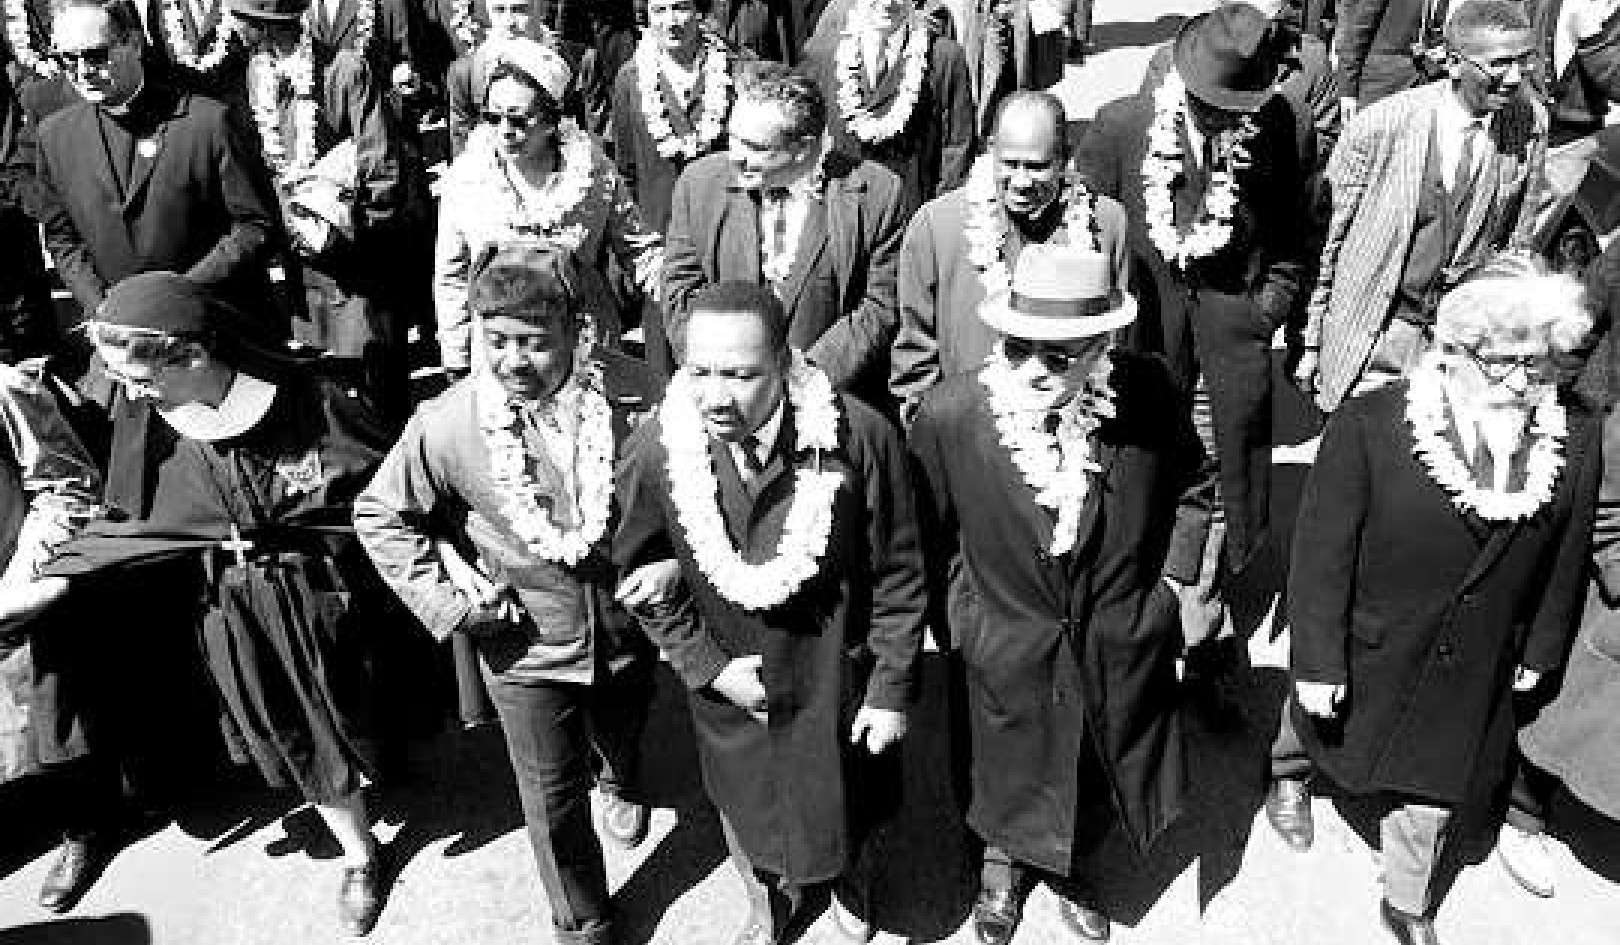 La vision de justice sociale de MLK incluait une maison de plusieurs religions